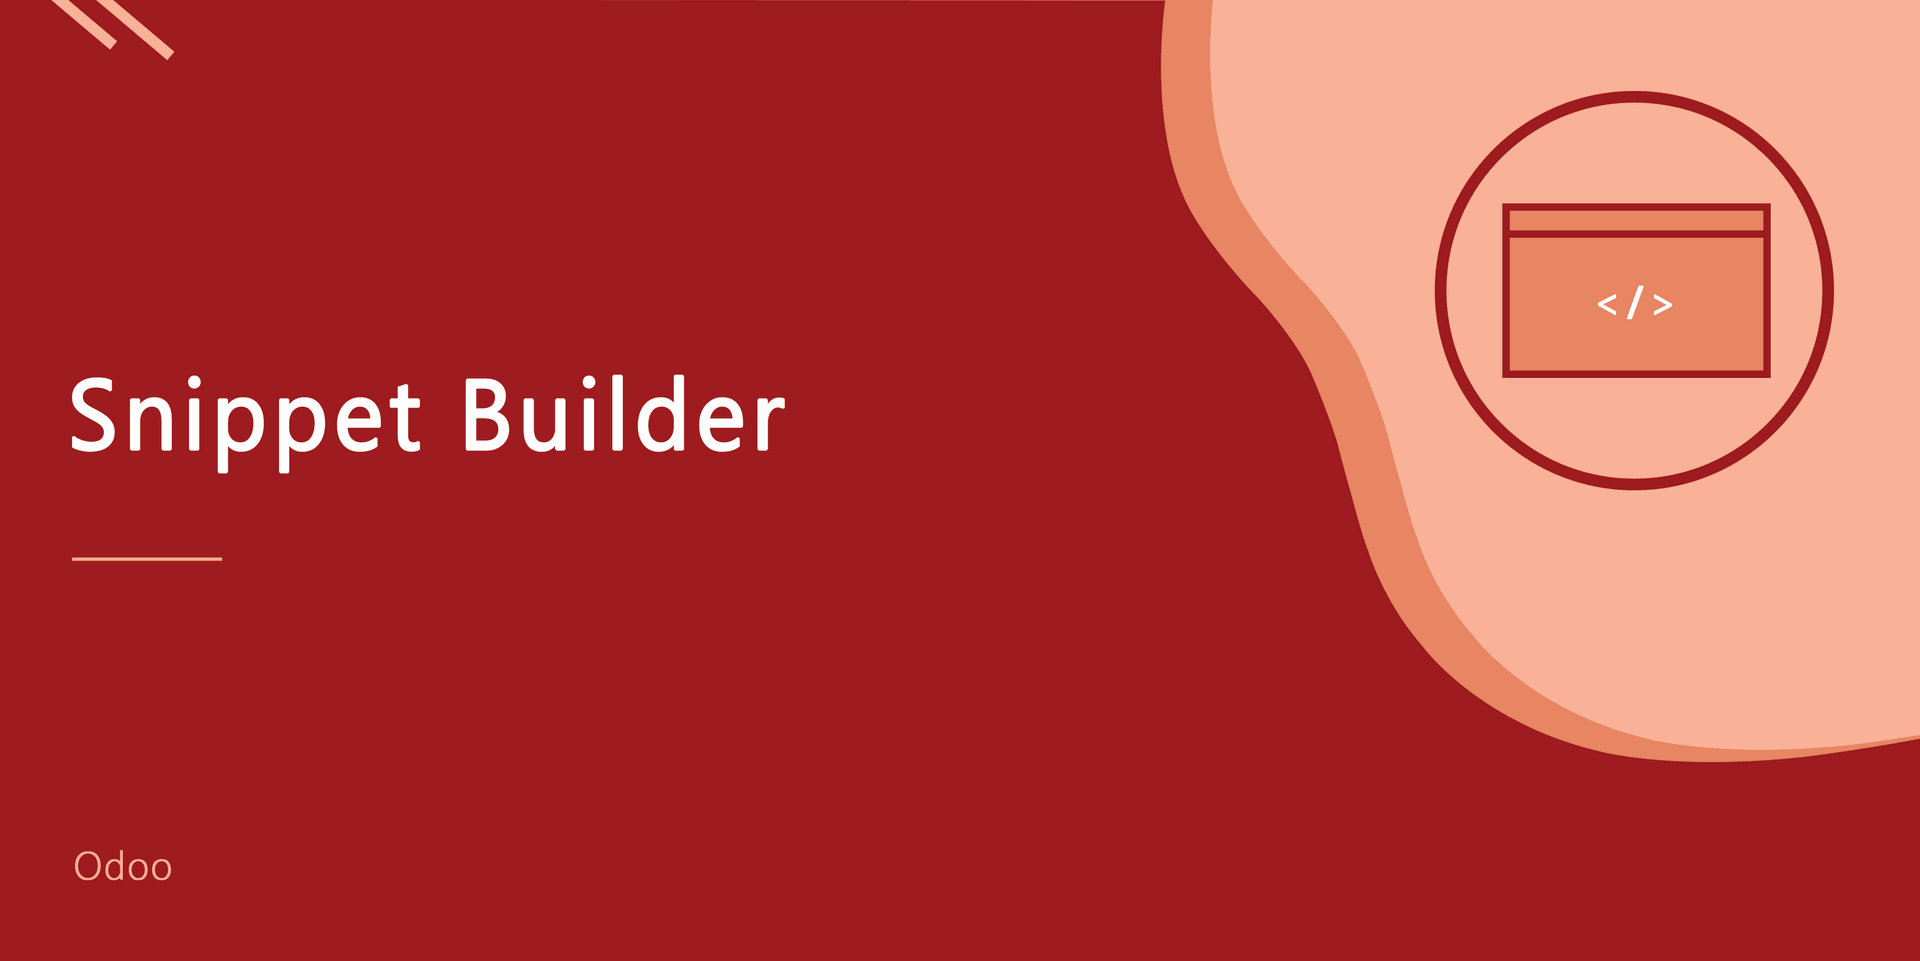 Snippet Builder